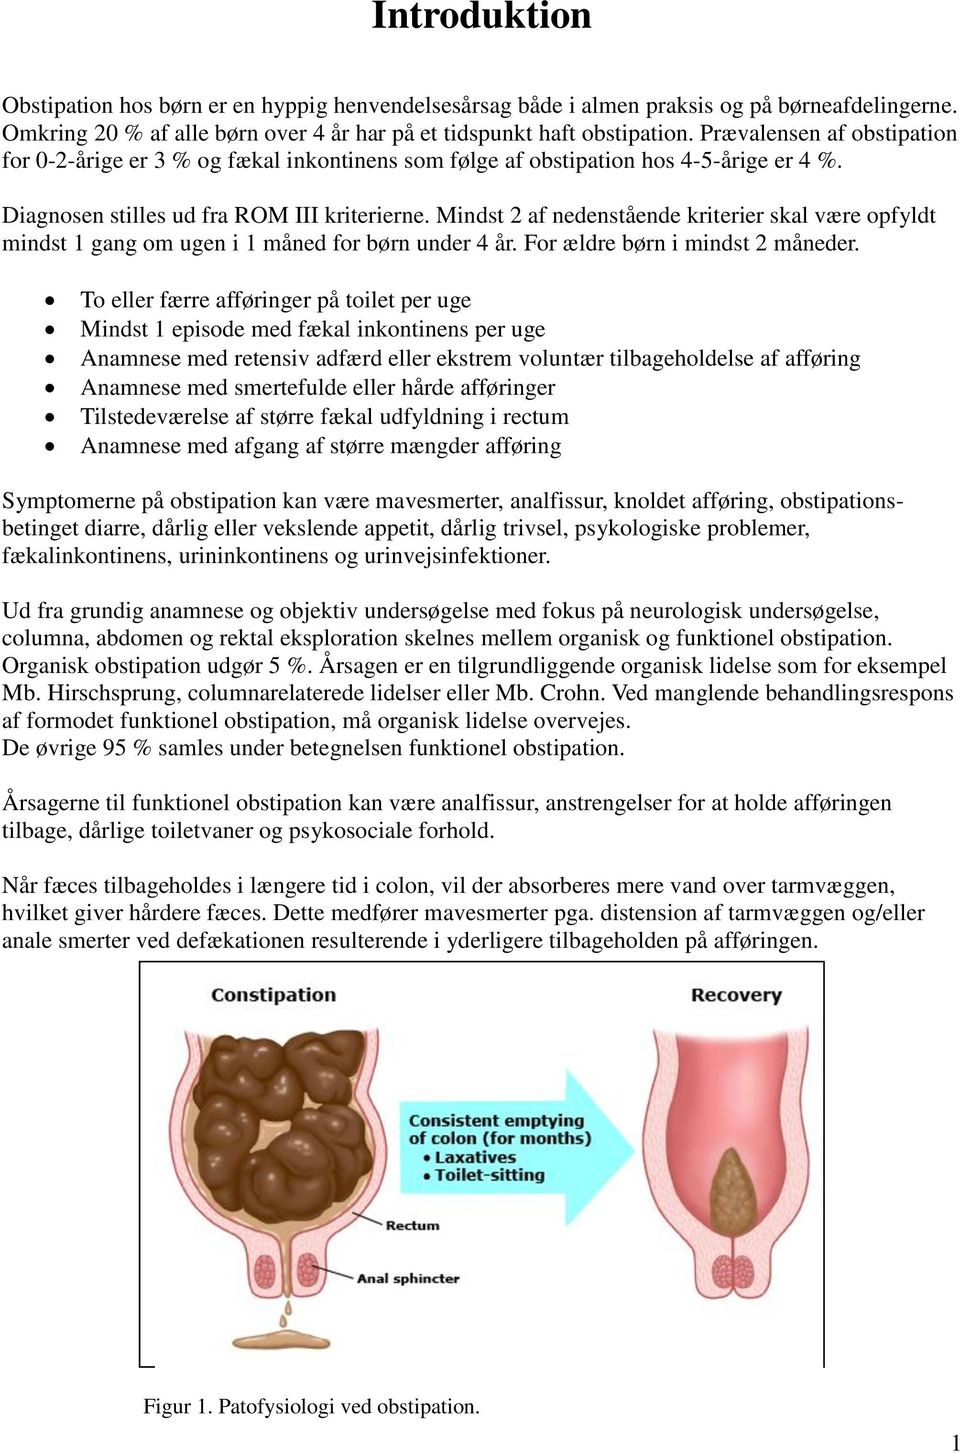 Behandling af hos børn movicol eller laktulose - PDF download